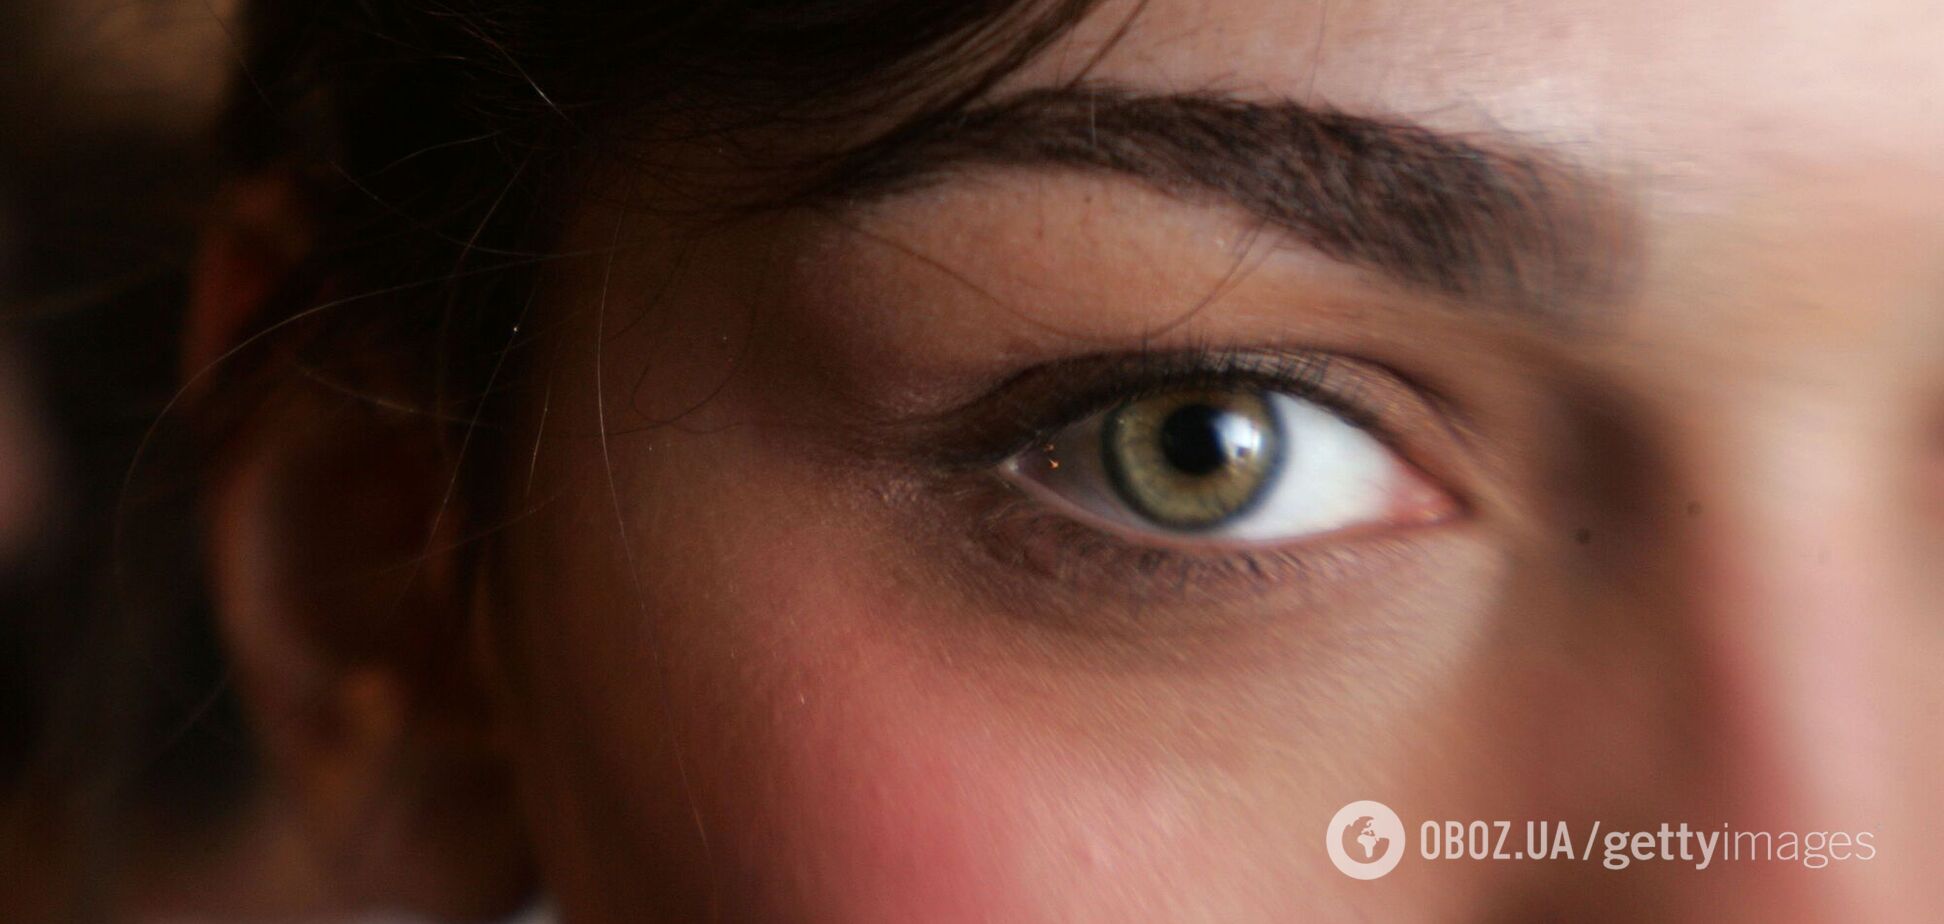 Коронавірус може спричиняти ураження нервів рогівки ока – дослідження